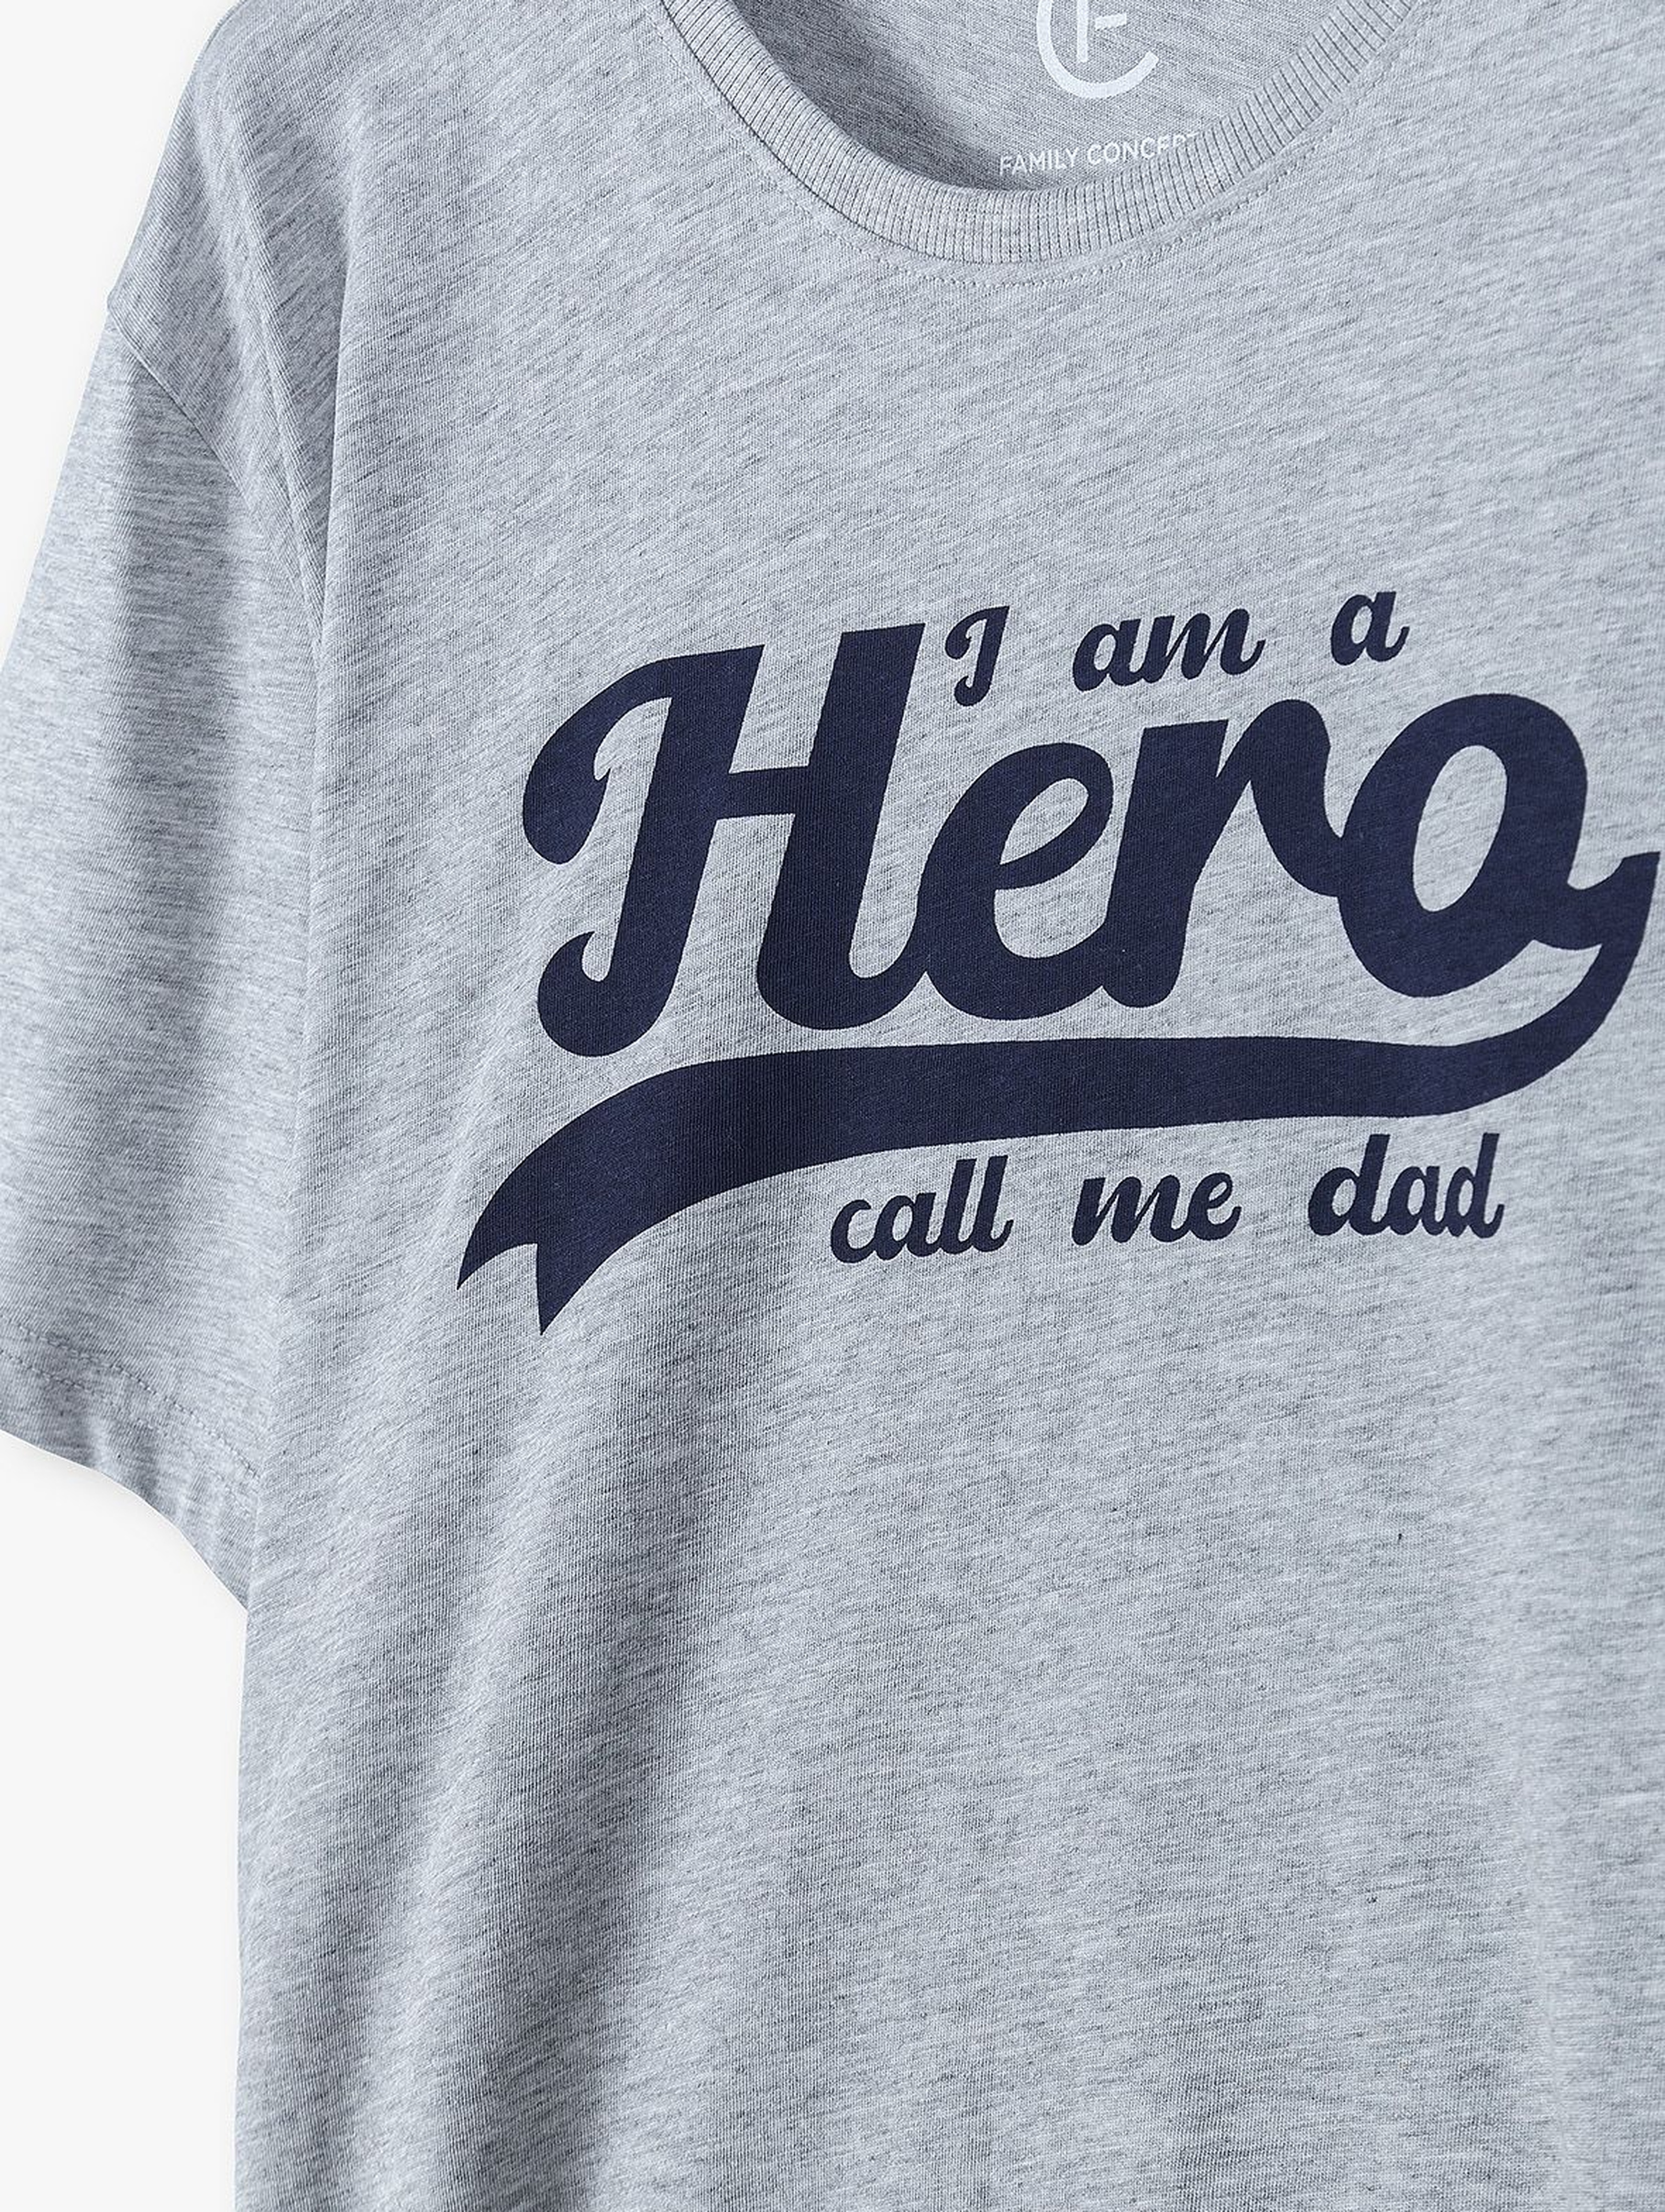 T-shirt dla mężczyzny szary z napisem- Hero - ubrania dla całej rodziny